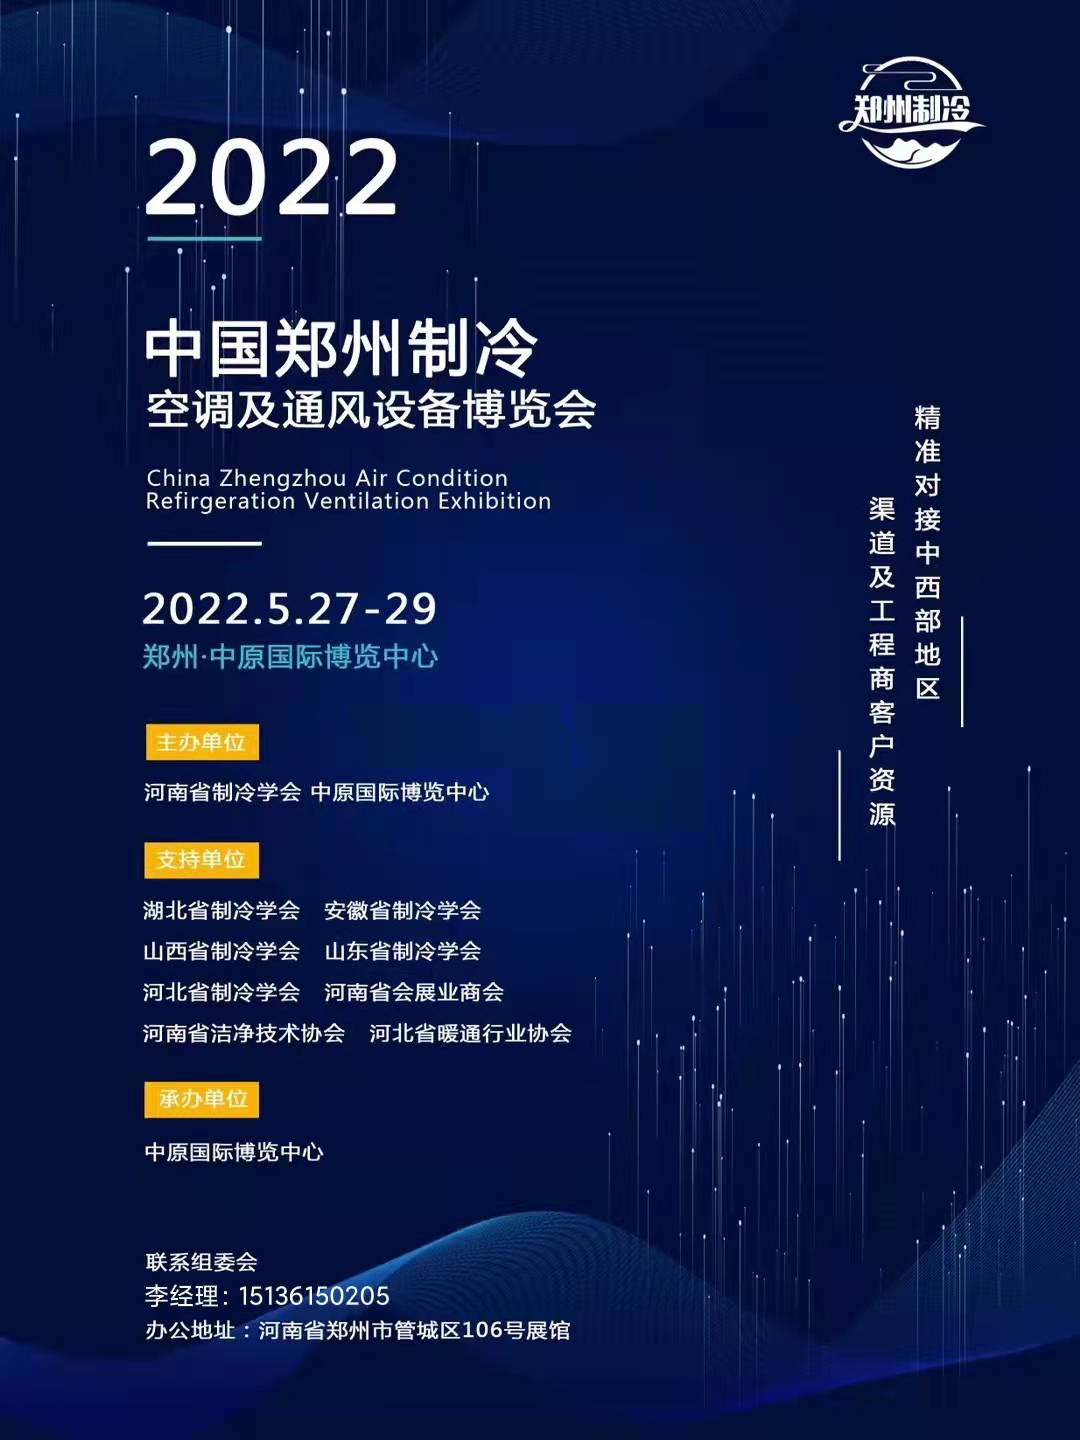 欢迎参加2022中国郑州制冷、空调及通风展览会